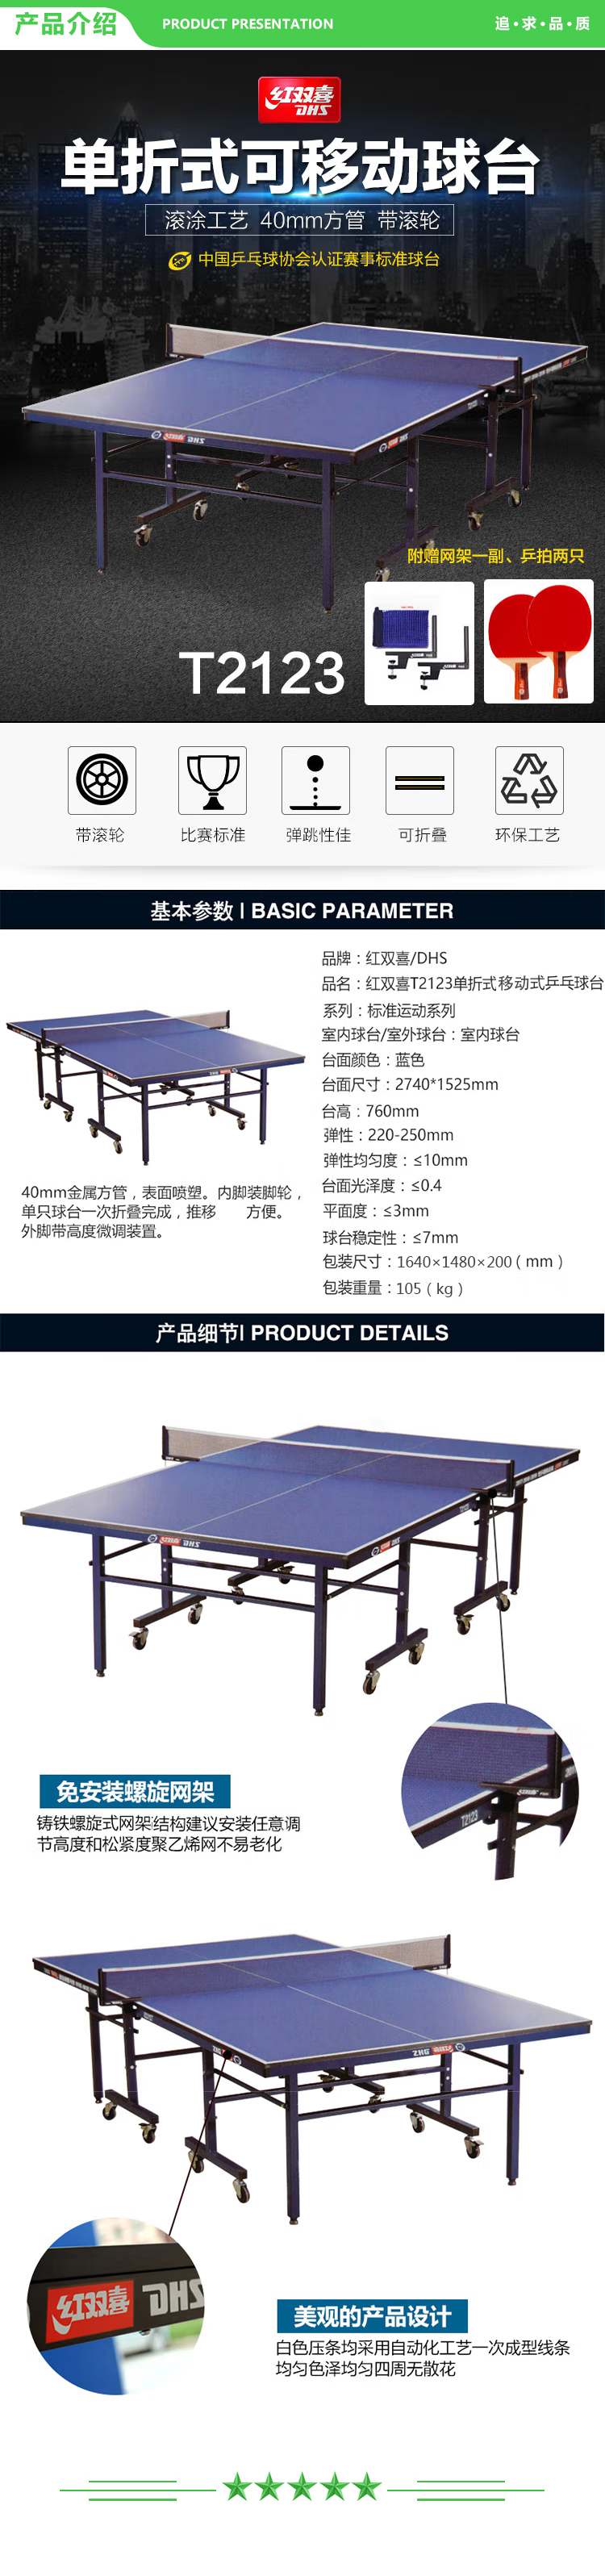 红双喜 DHS T2123 乒乓球桌 单折式标准室内比赛球台(含网架、乒拍两只) .jpg